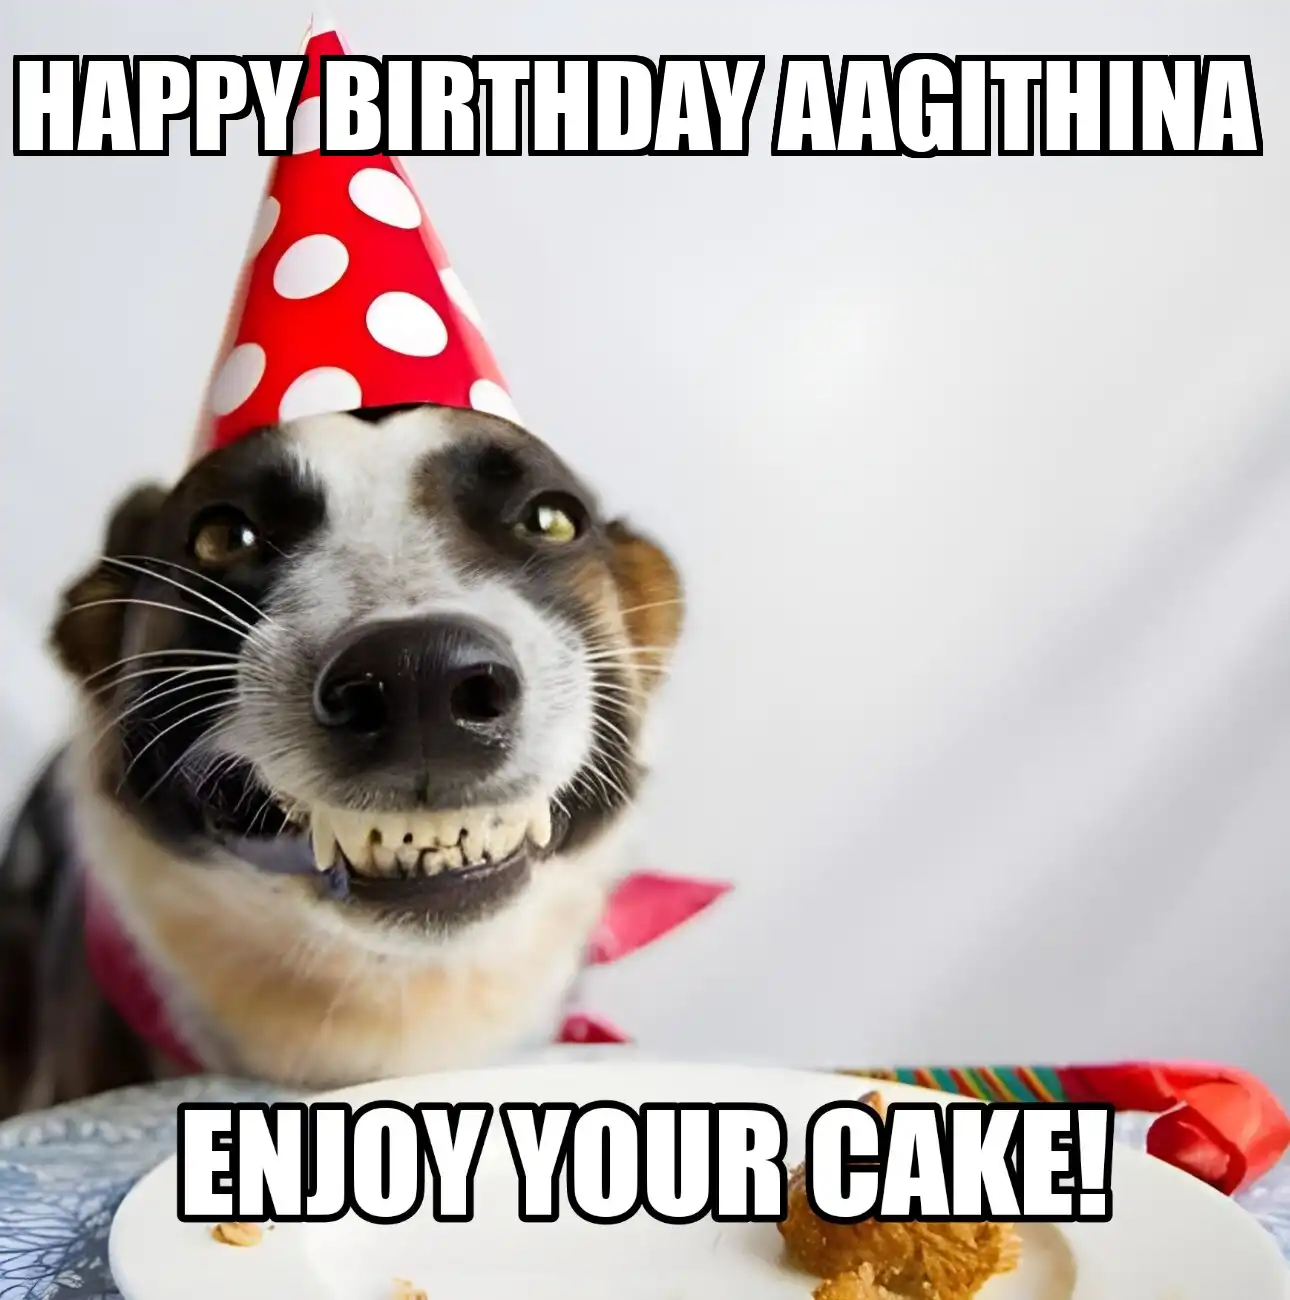 Happy Birthday Aagithina Enjoy Your Cake Dog Meme